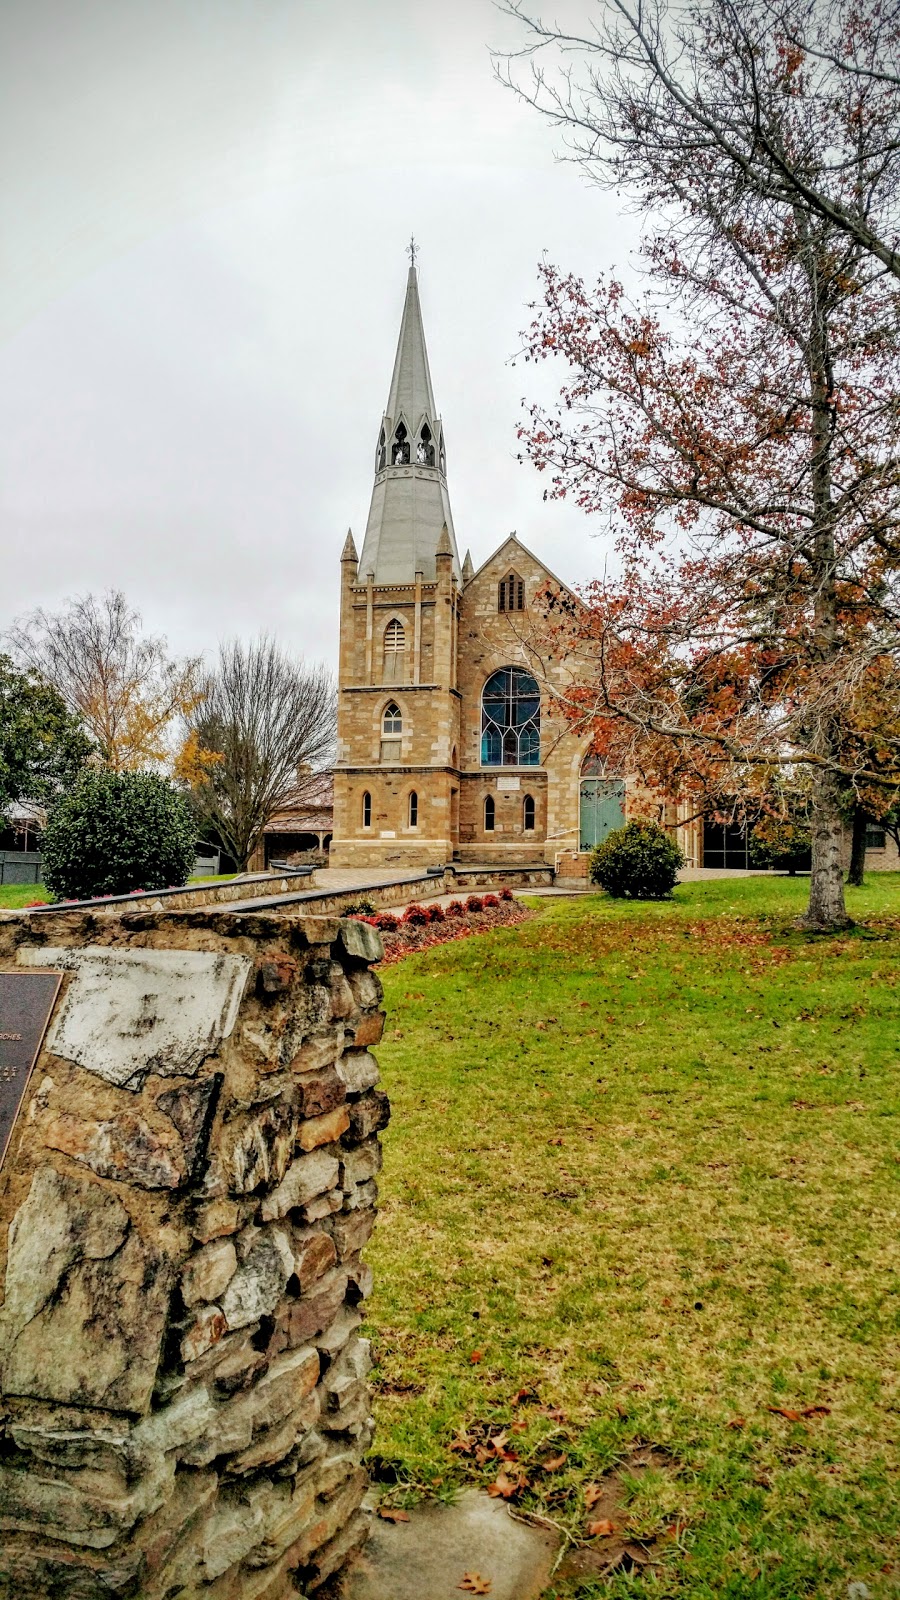 Saint Pauls Lutheran Church | church | 10 Mount Barker Rd, Hahndorf SA 5245, Australia | 0883887240 OR +61 8 8388 7240